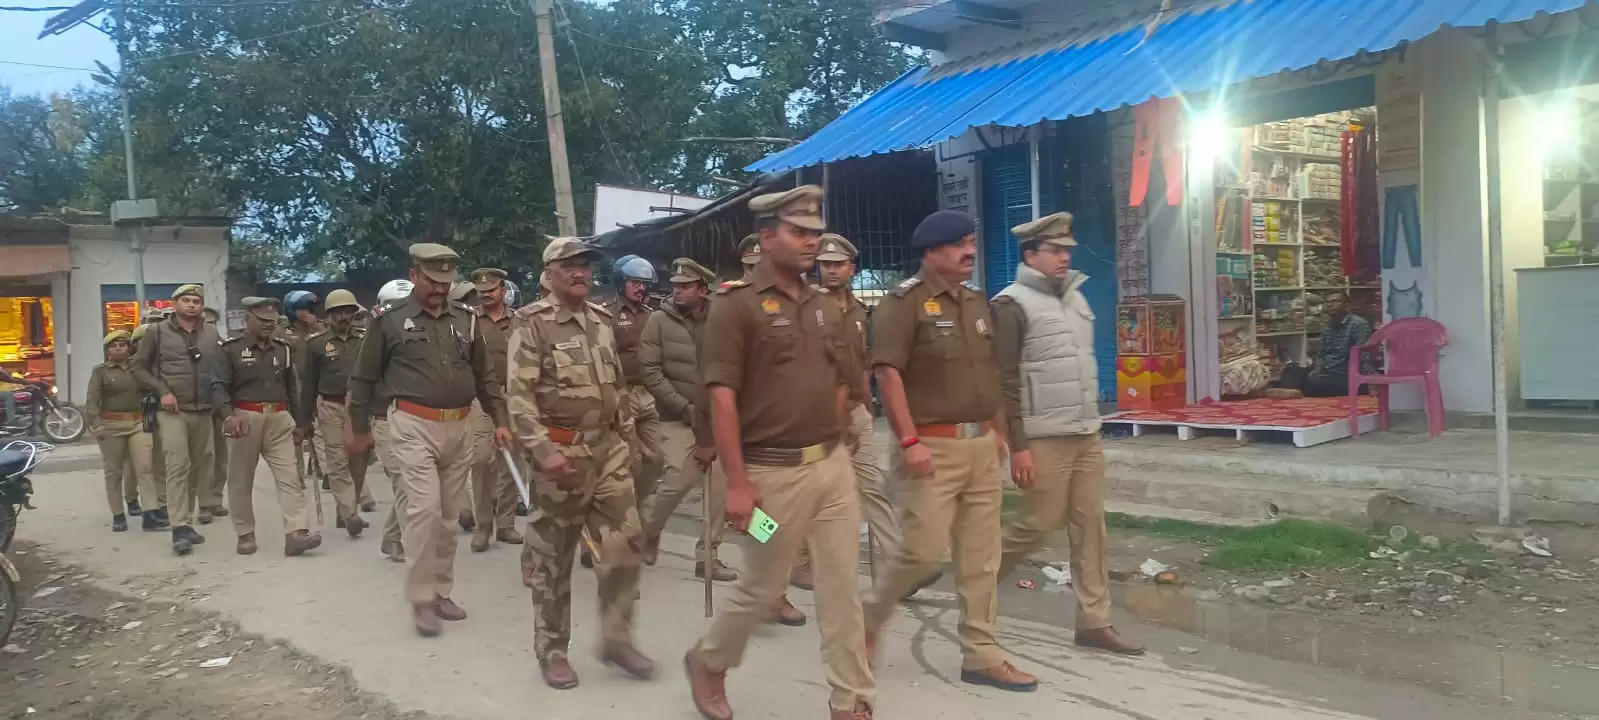 Varanasi News: सहायक पुलिस आयुक्त राजातालाब द्वारा पुलिस बल एवं पैरामिलिट्री फोर्स के साथ फ्लैग मार्च किया गया